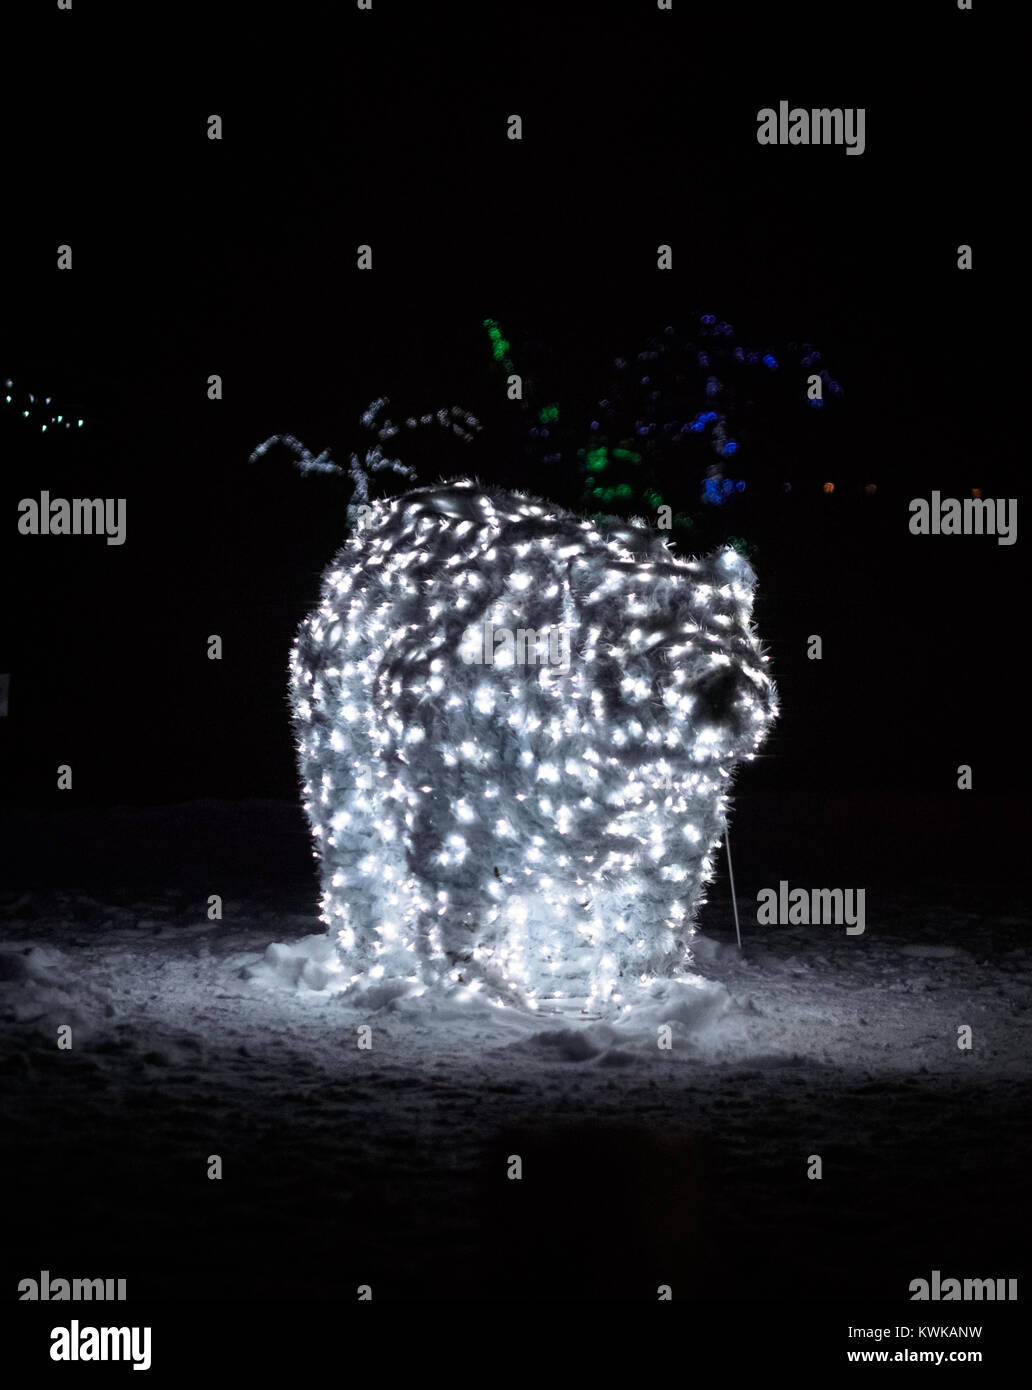 Eine stationäre Eisbären durch das Aufleuchten der Holiday Lichter in einem Winter Wonderland (Winter Festival der Lichter) bei Niagara Falls, Ontario, Kanada erstellt Stockfoto